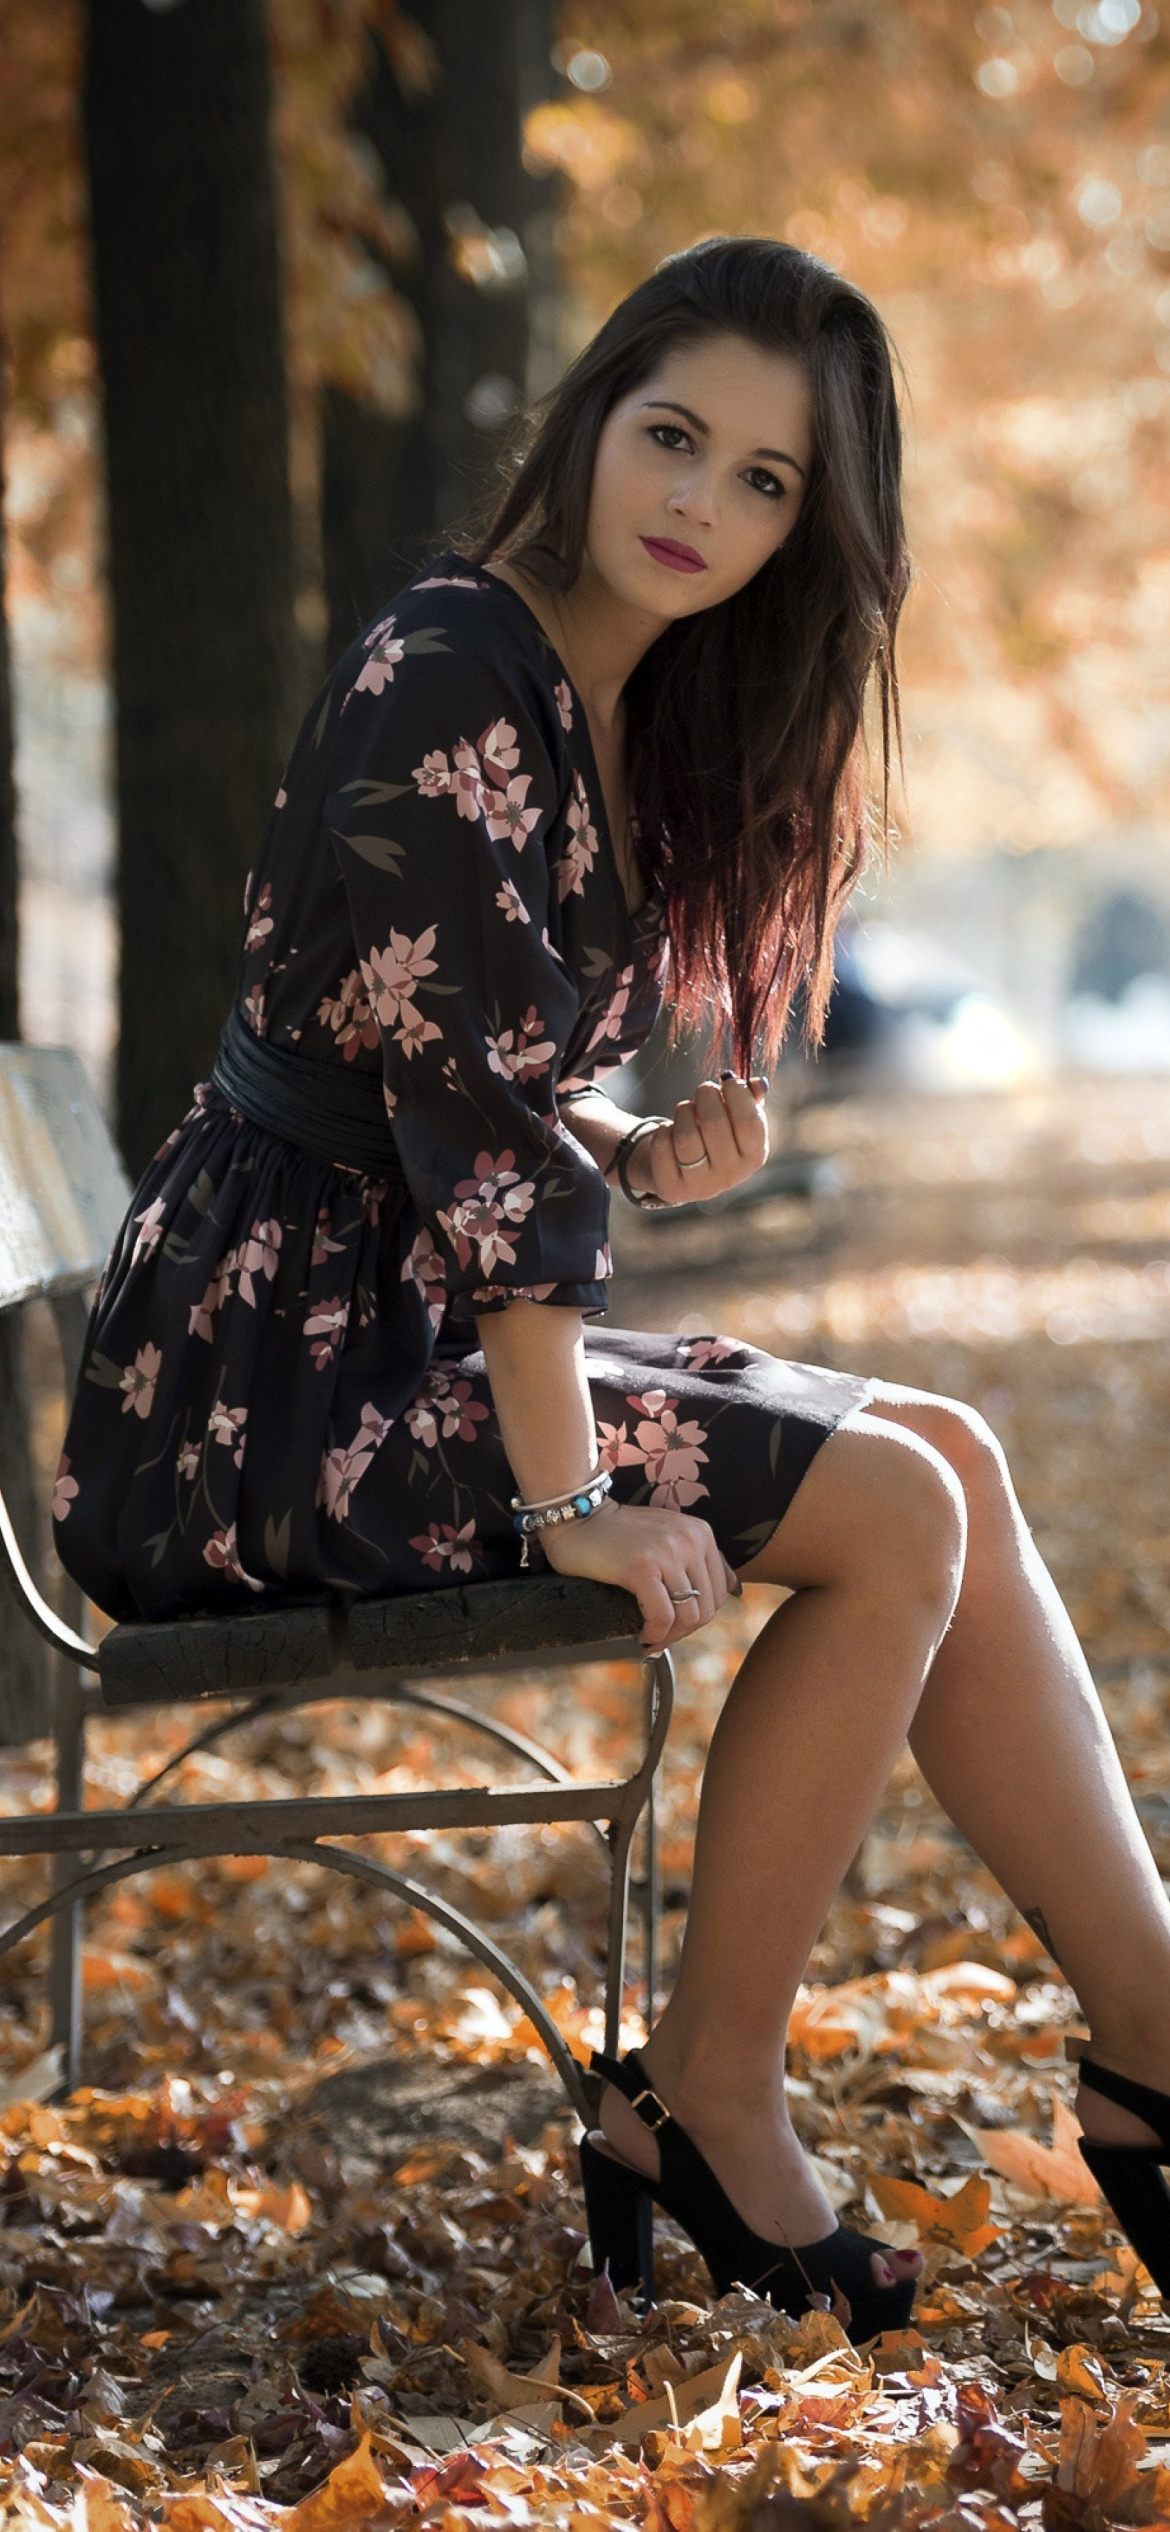 Caucasian joy girl in autumn park screenshot #1 1170x2532